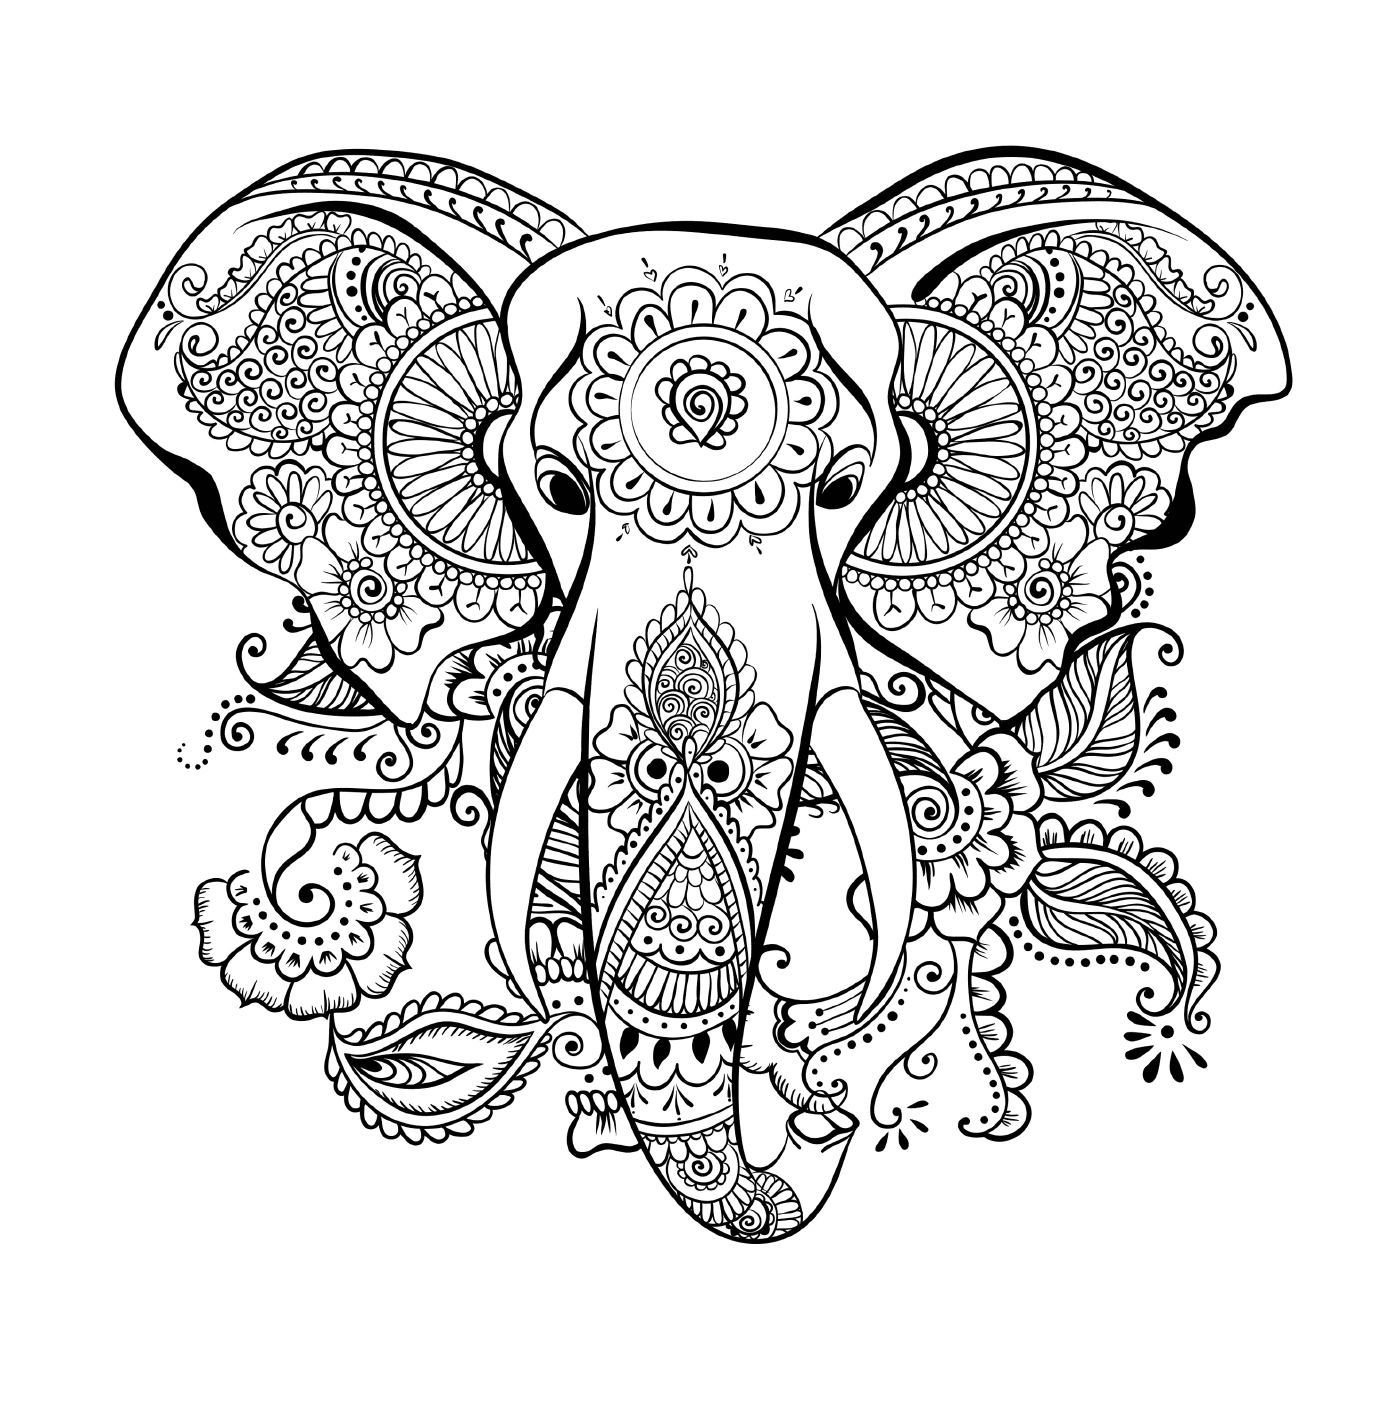  Ein Elefant mit einem Blumenmuster auf dem Kopf 